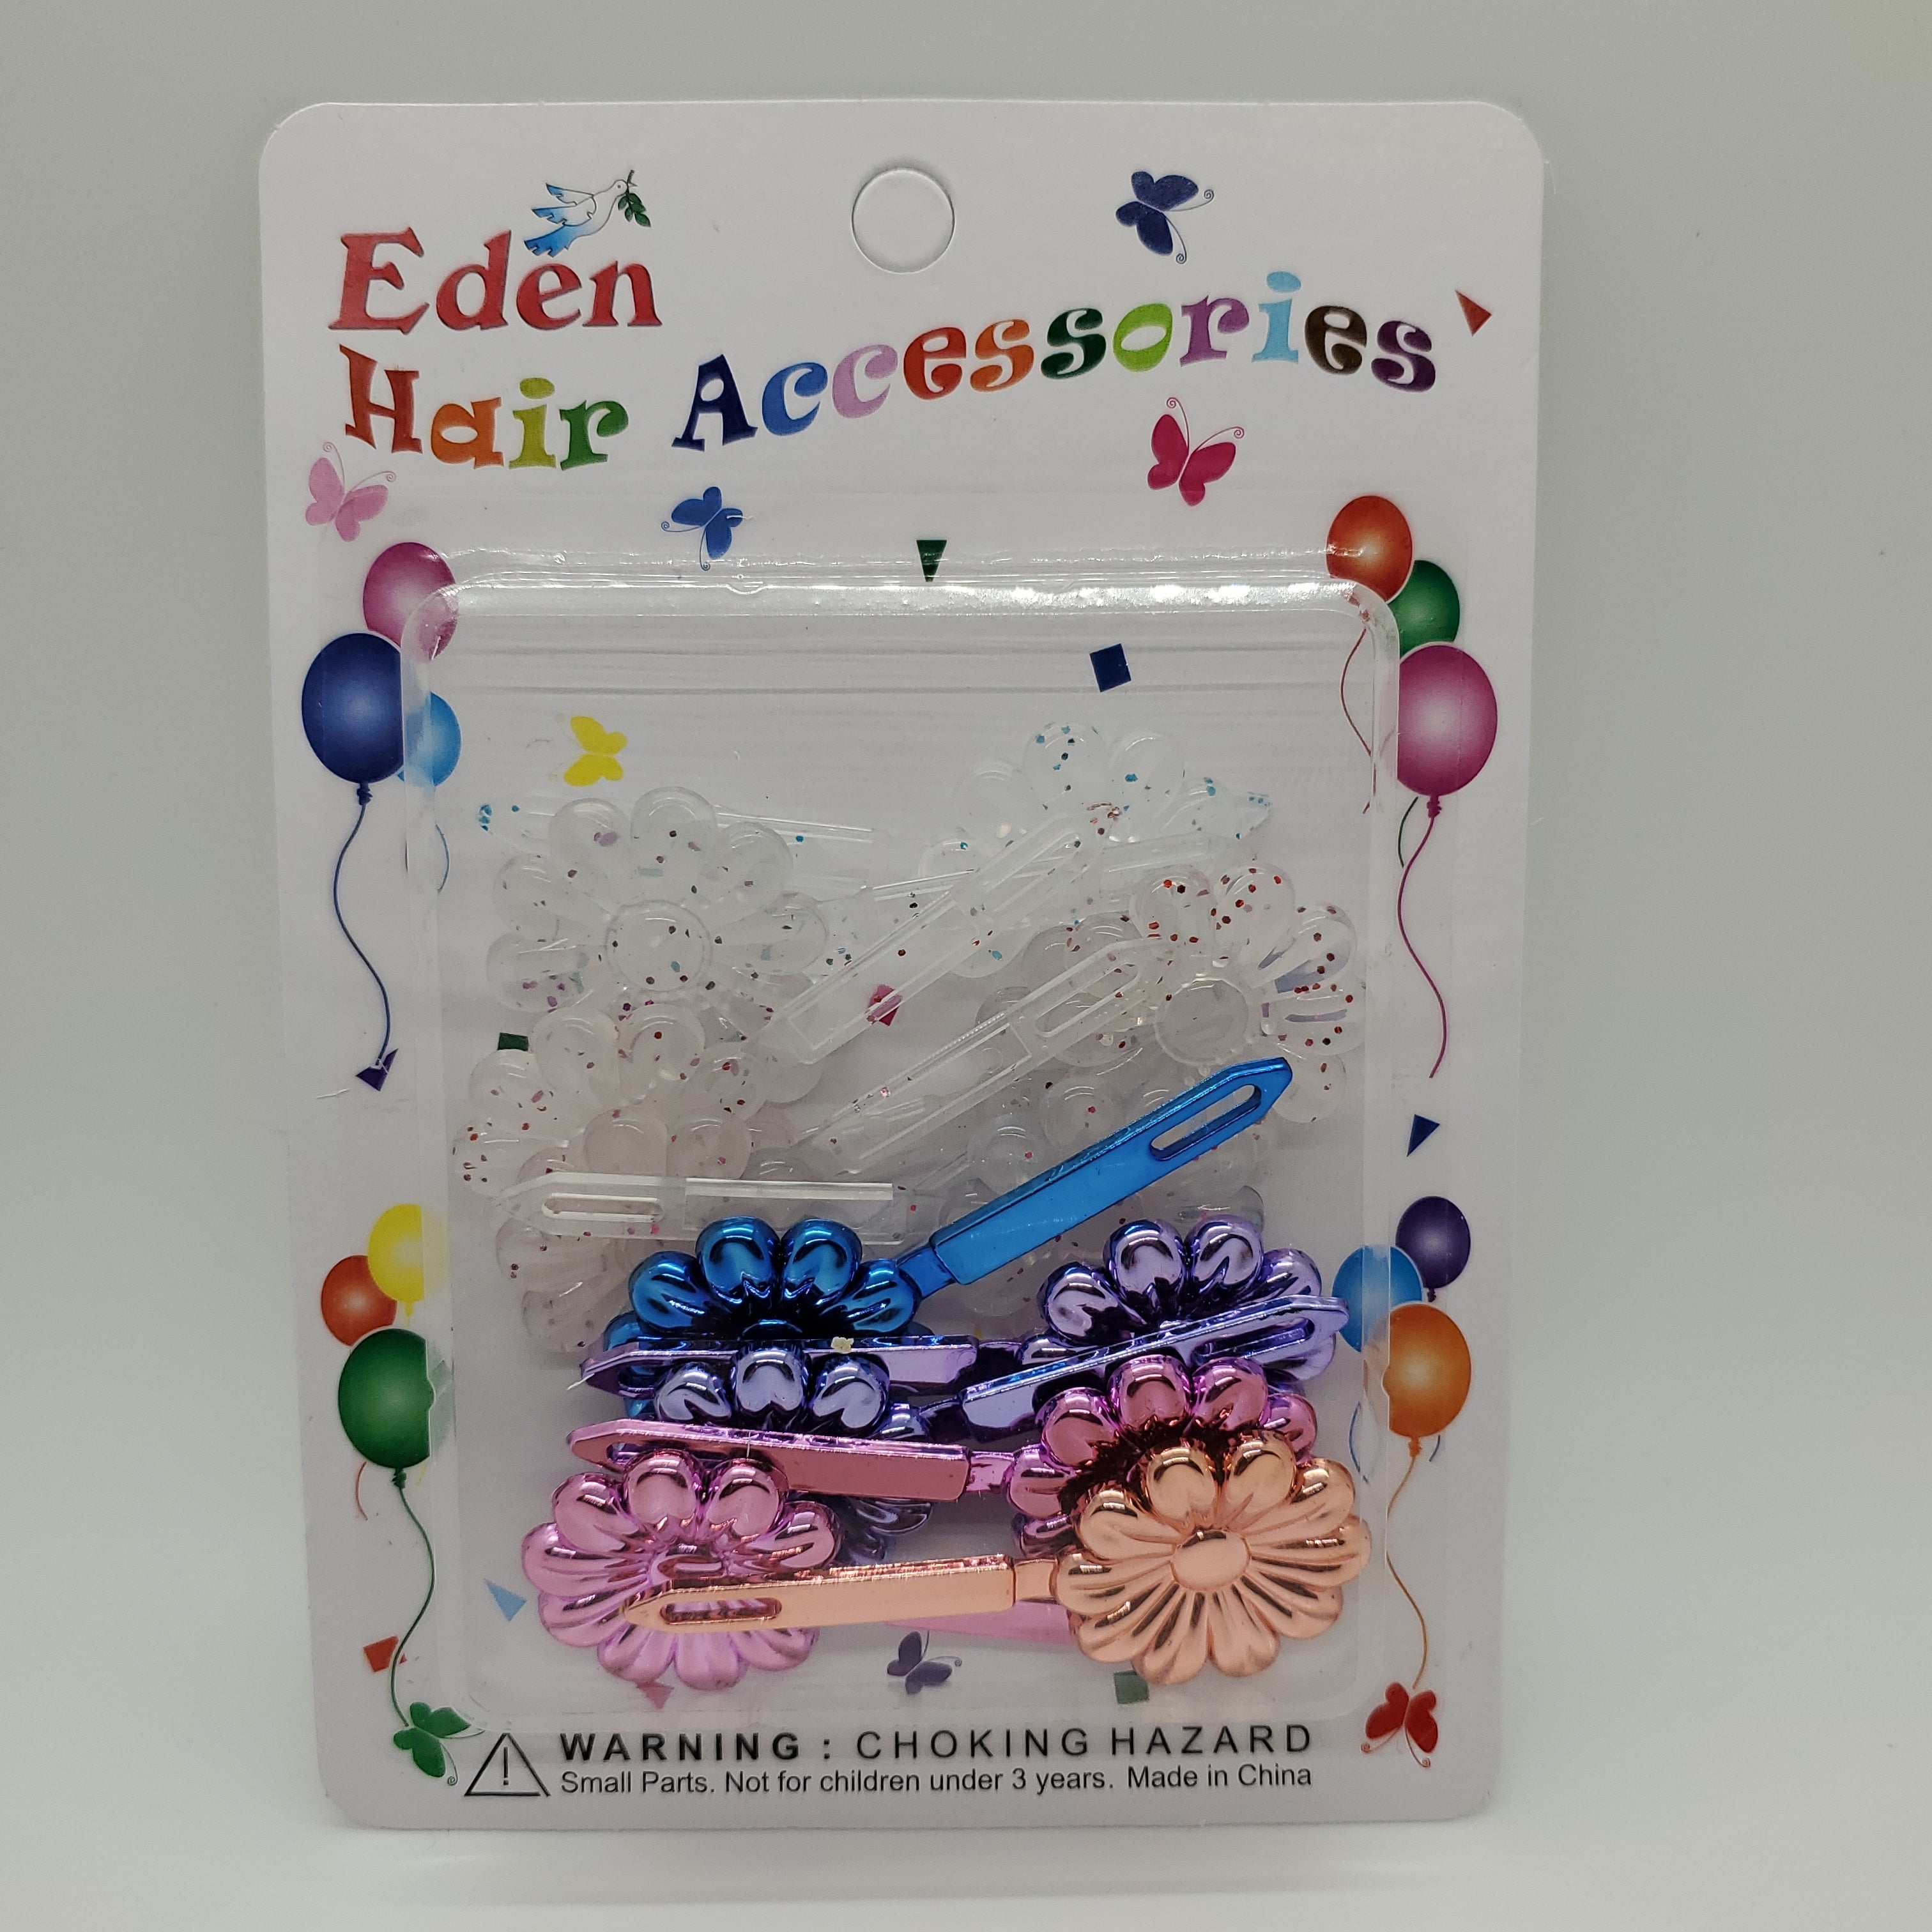 Eden Collections Hair Barrette Sunflower Glitter FB - Beauty Bar & Supply